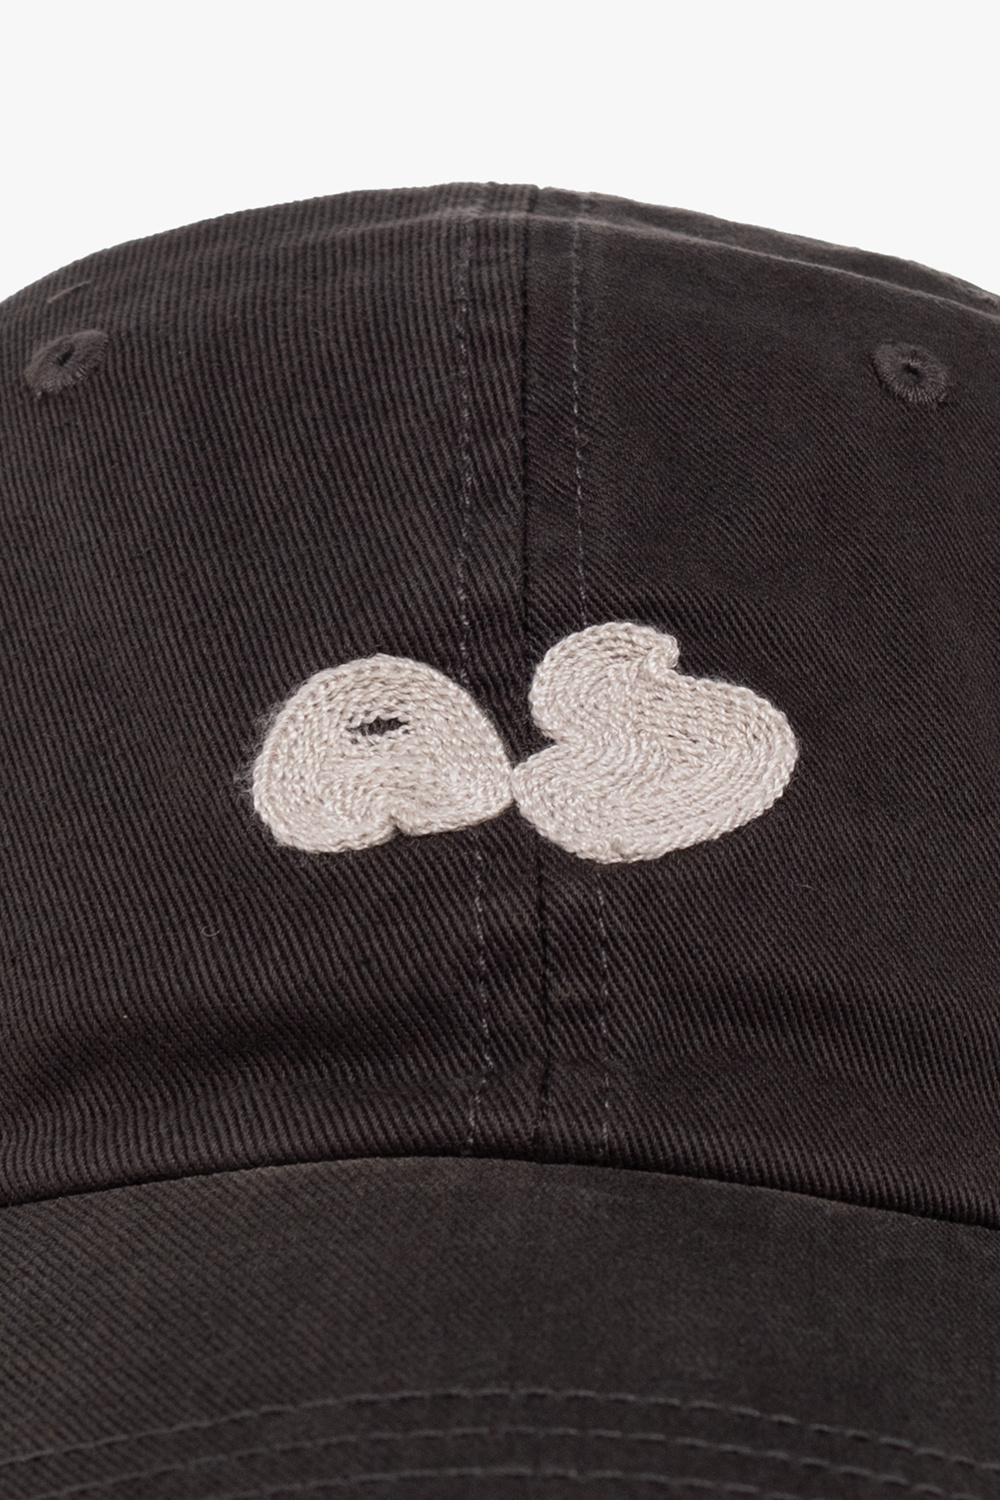 Acne Studios Baseball cap with logo